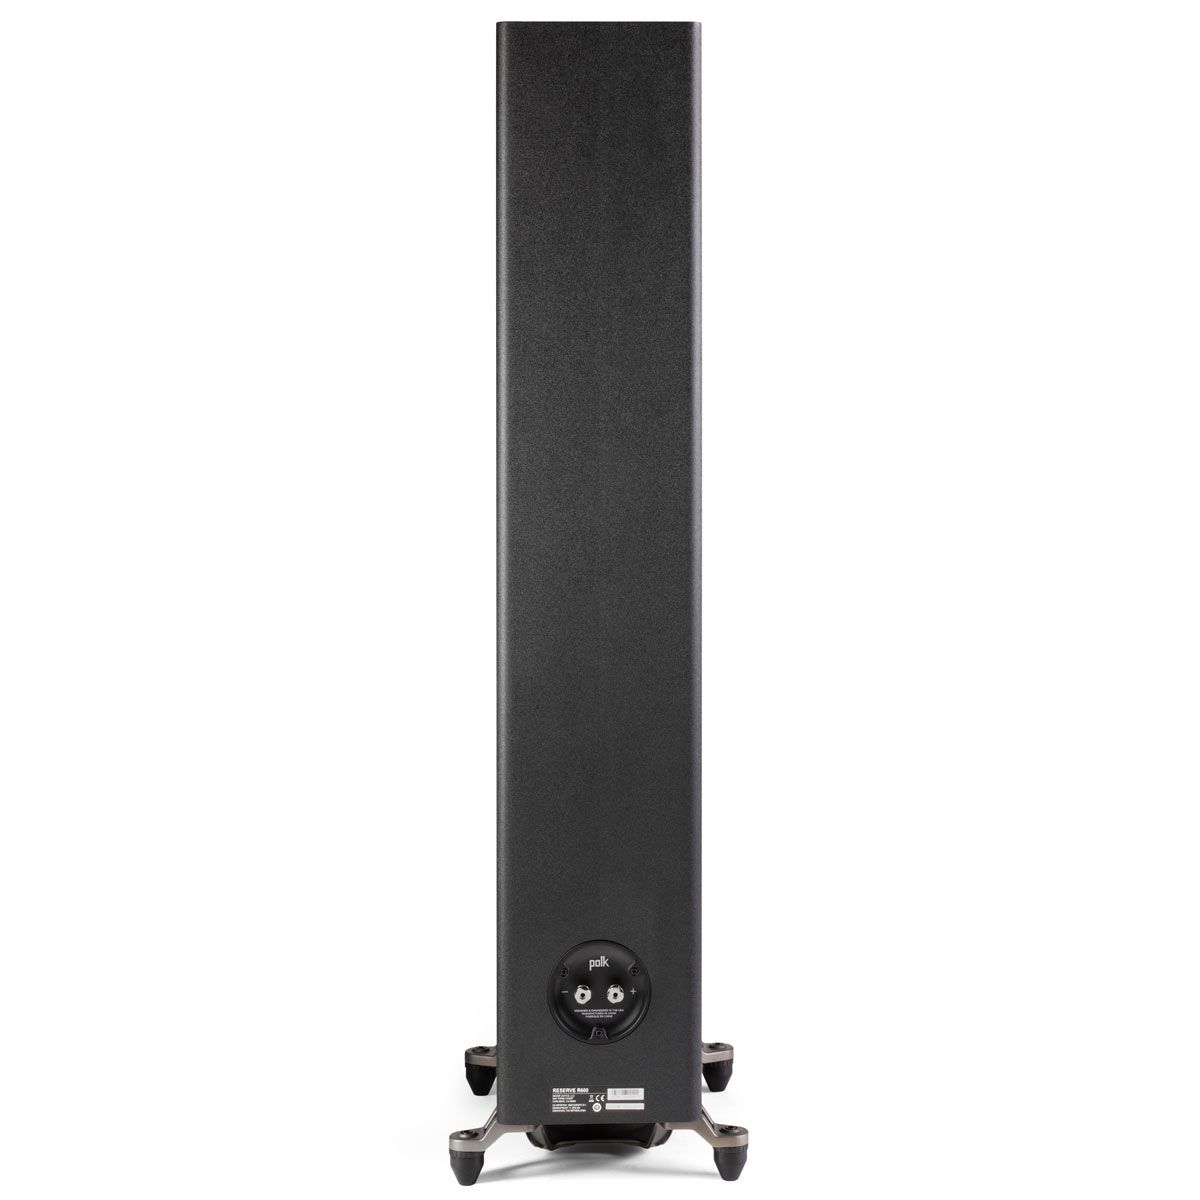 Polk Audio Reserve R600 Floorstanding Speaker, Black, back